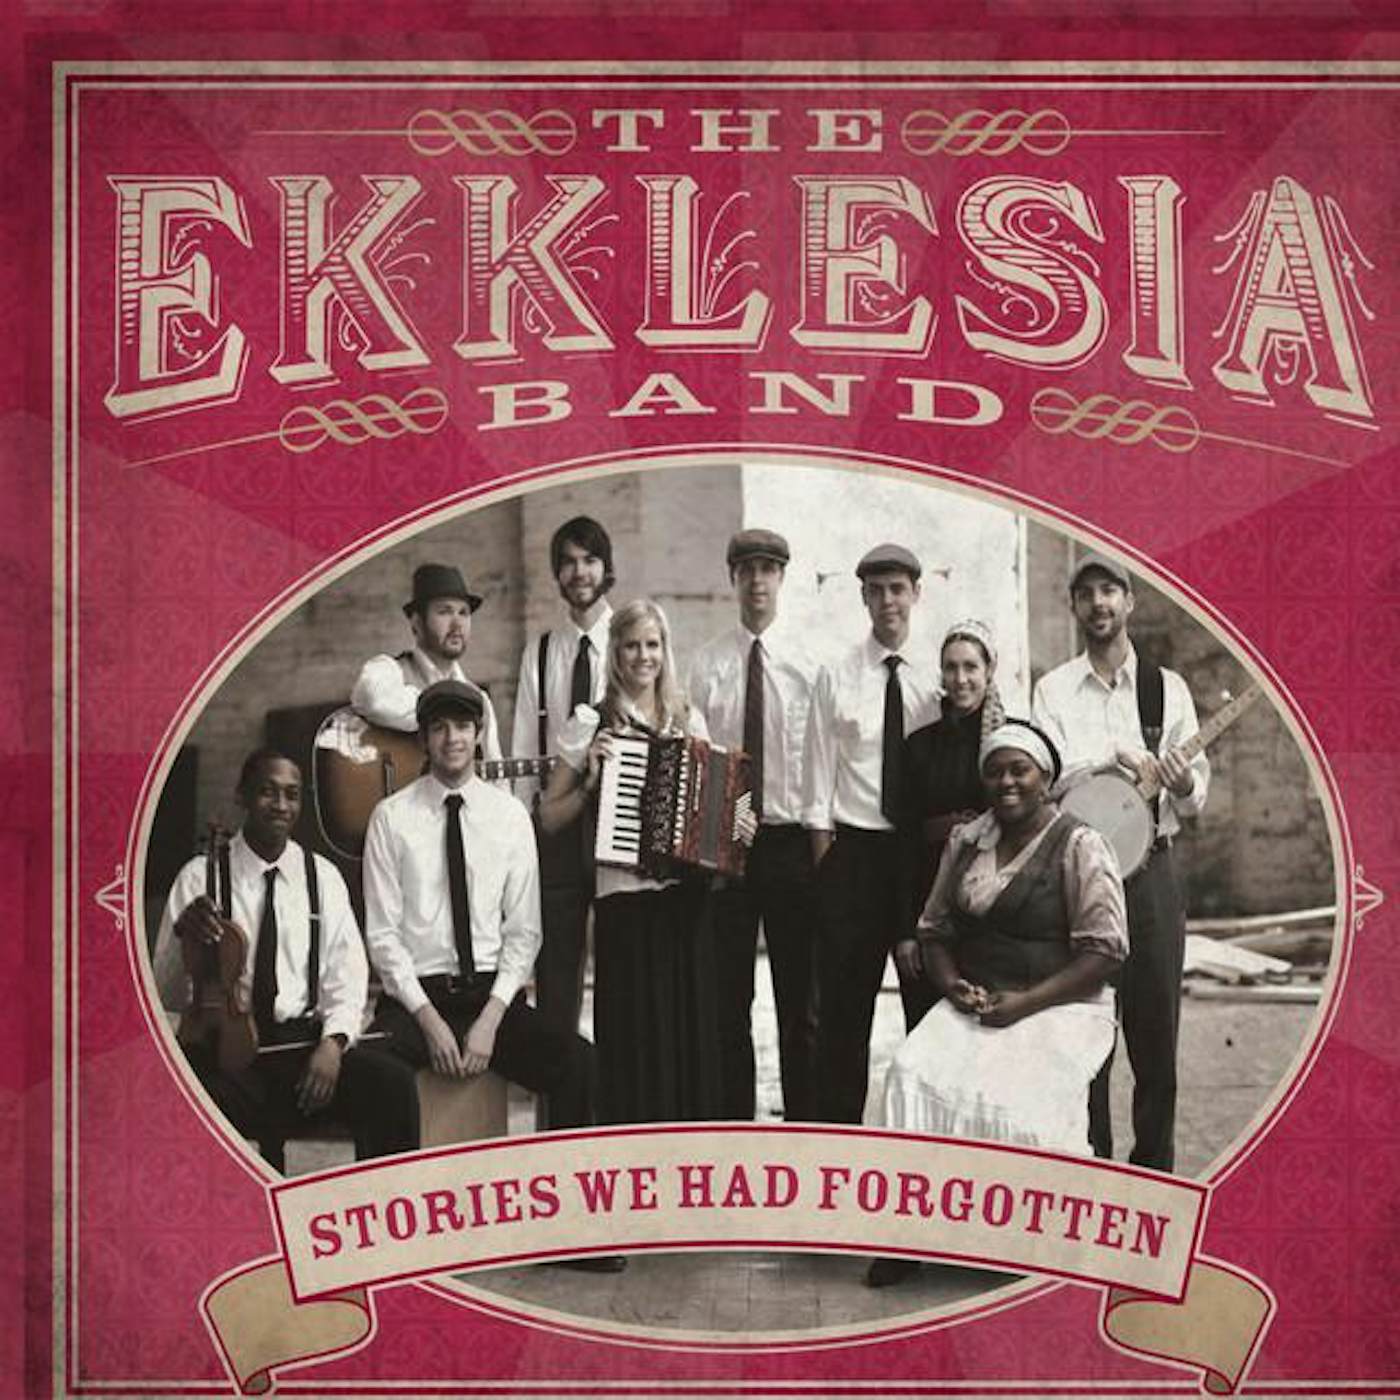 The Ekklesia Band